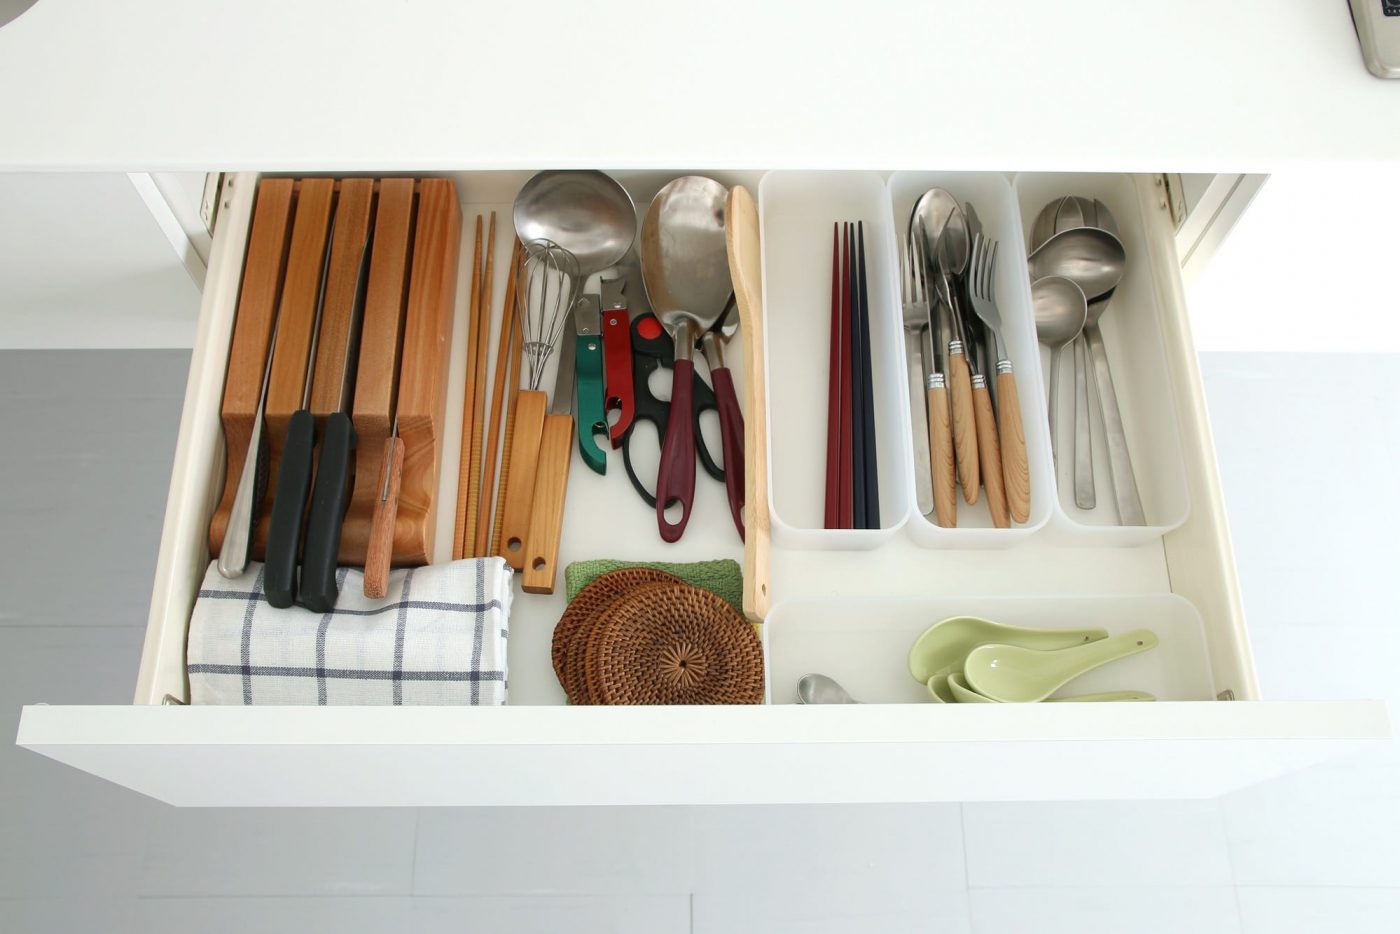 キッチン道具の収納に便利な引き出し。（本体とコンロサイズによってサイズが変わります）
